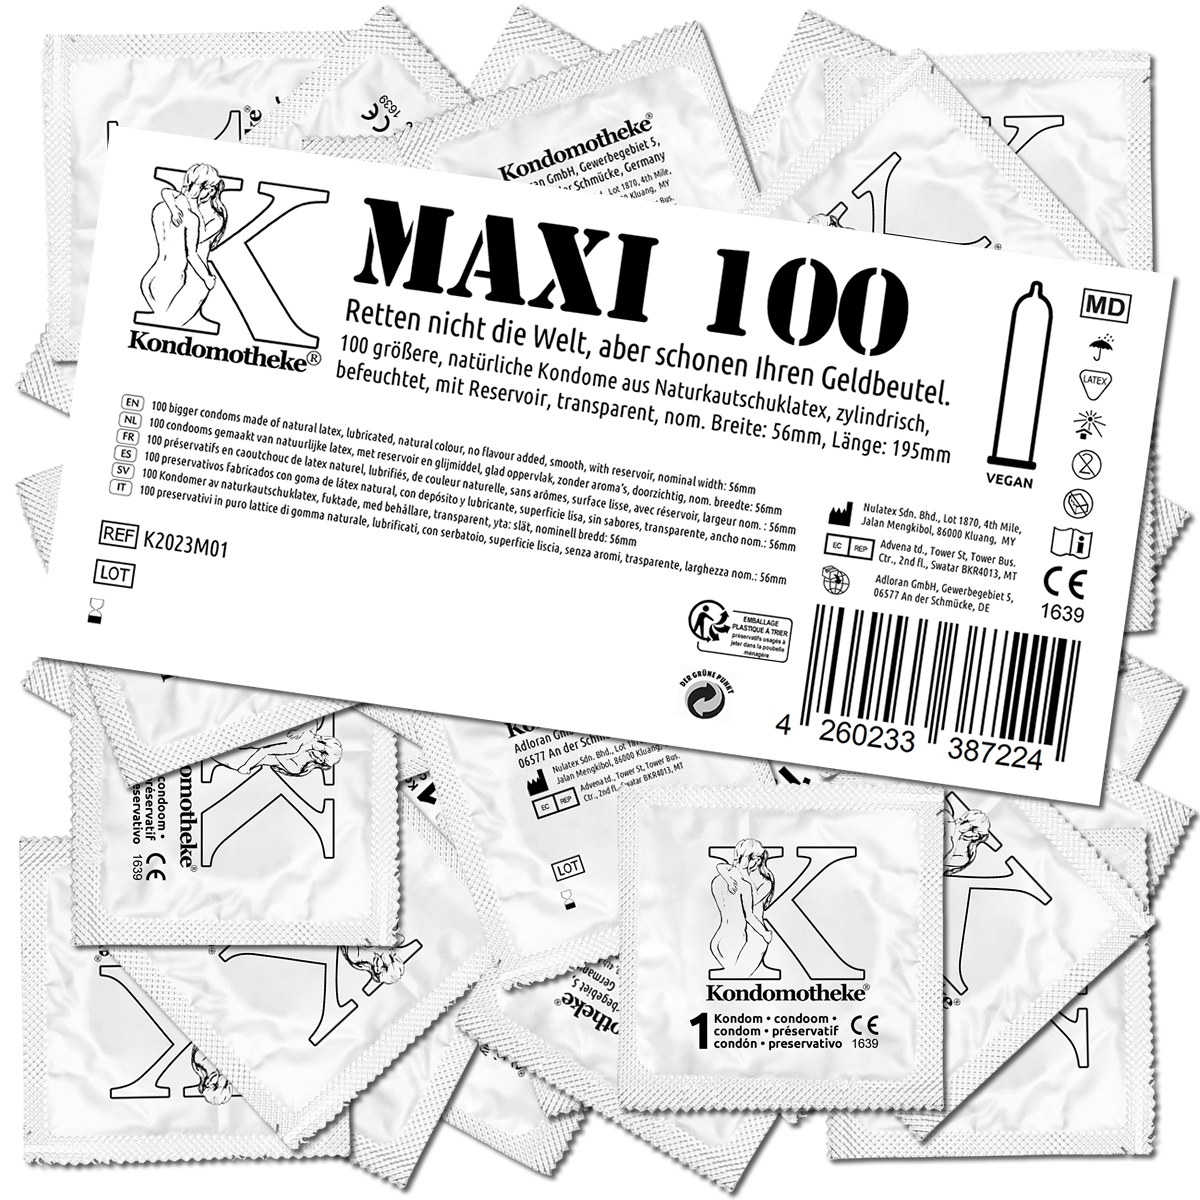 Kondomotheke «MAXI» 100 größere Kondome für richtig viel Platz - die preiswerten Kondome zum Super-Sparpreis!